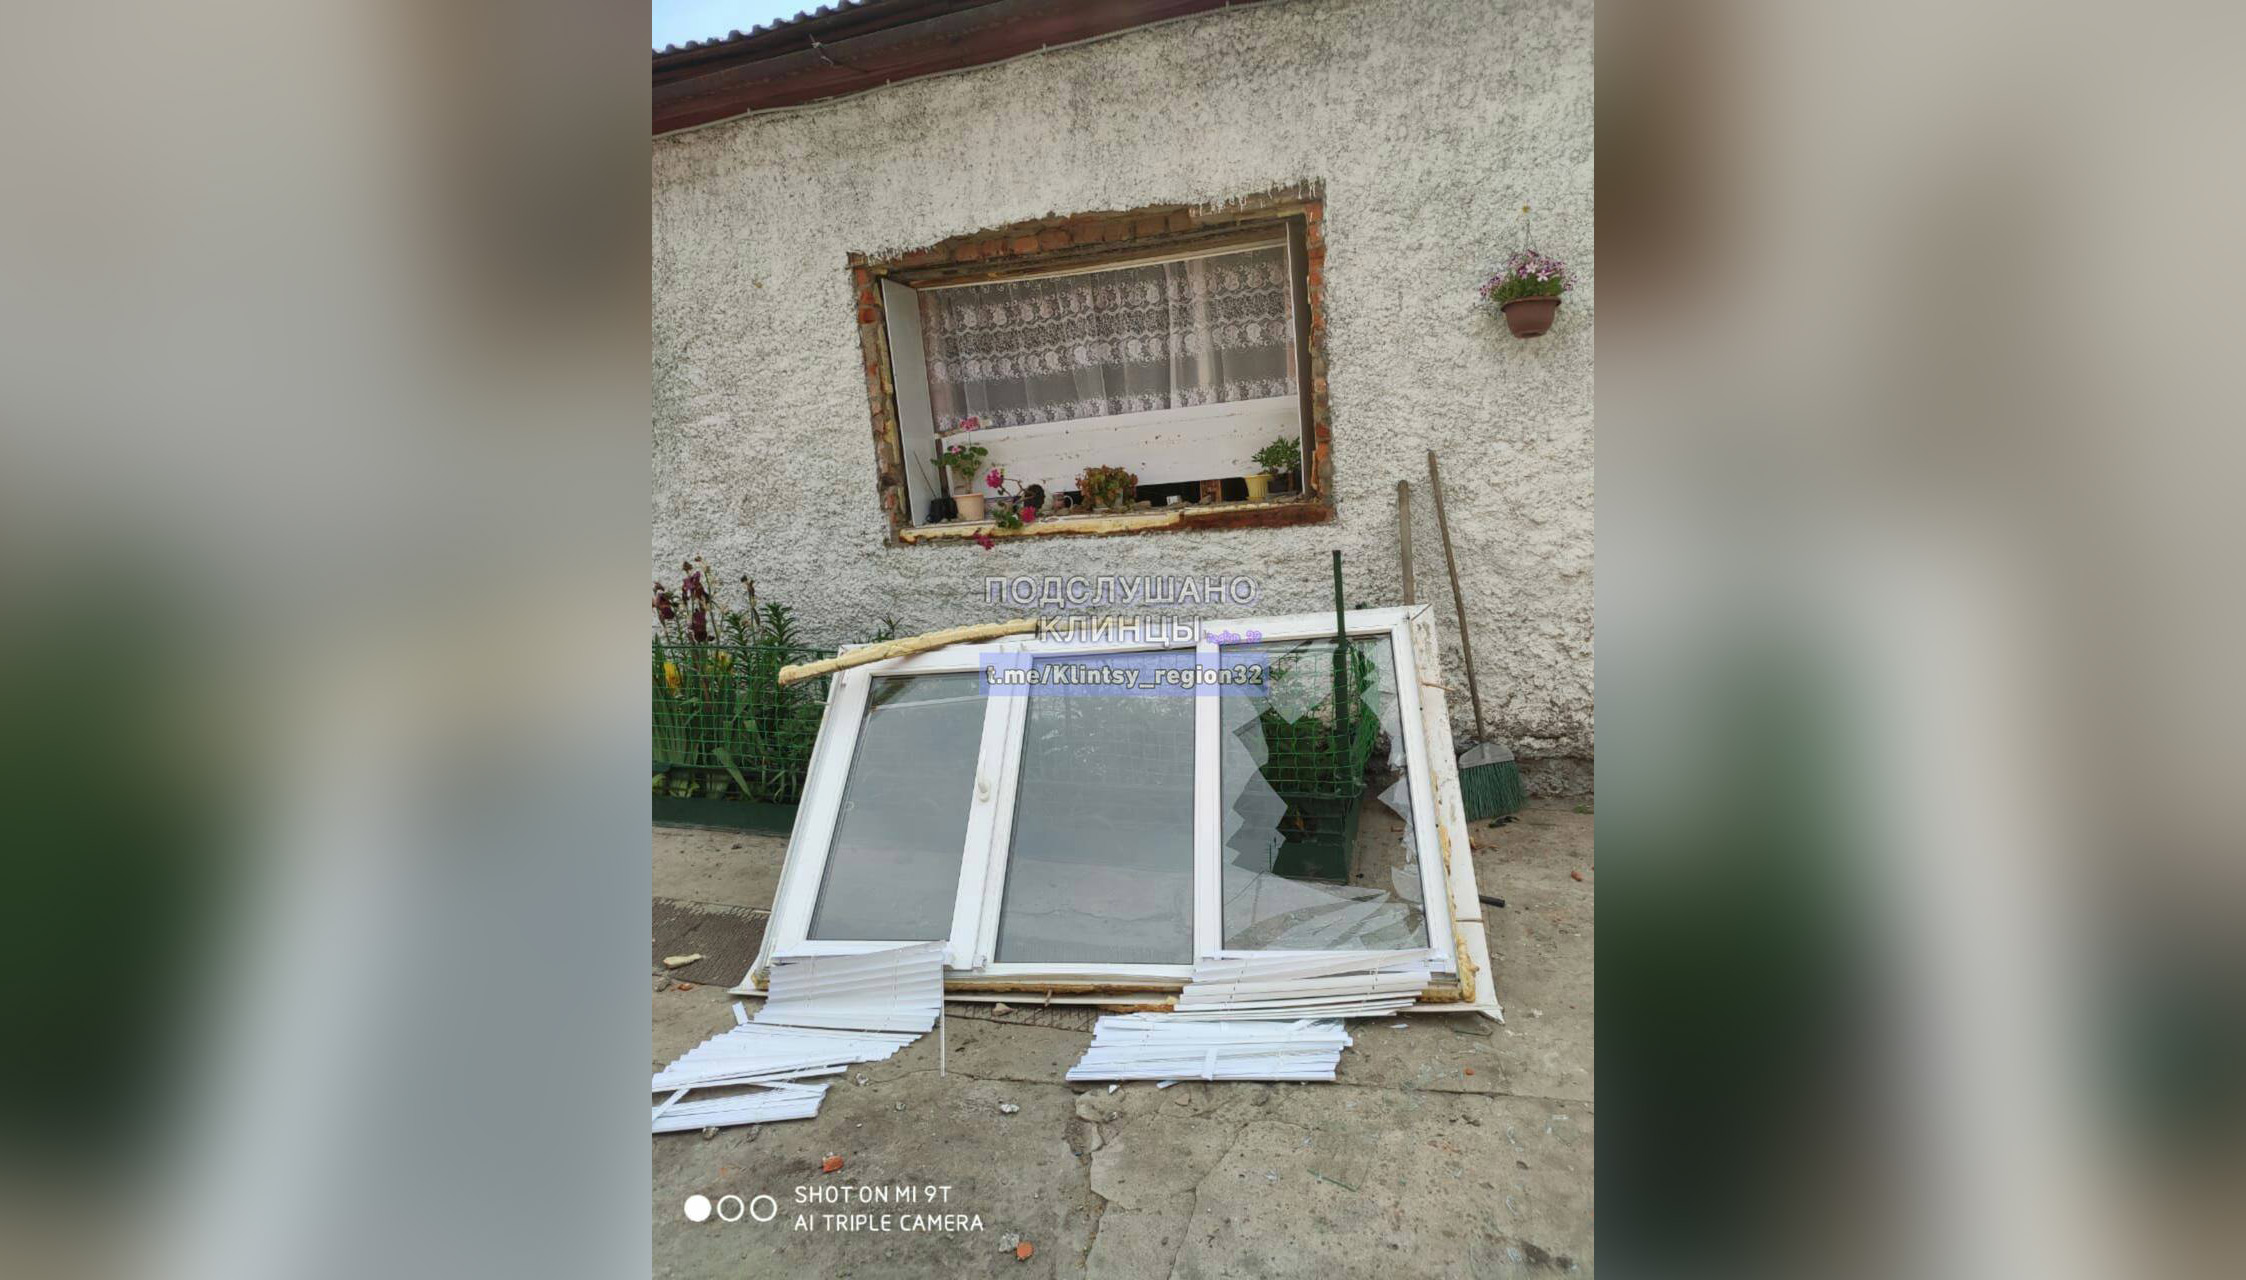 Окно одного из домов, повреждённое в результате обстрела села Займище в Брянской области. Фото © Telegram / Подслушано Клинцы